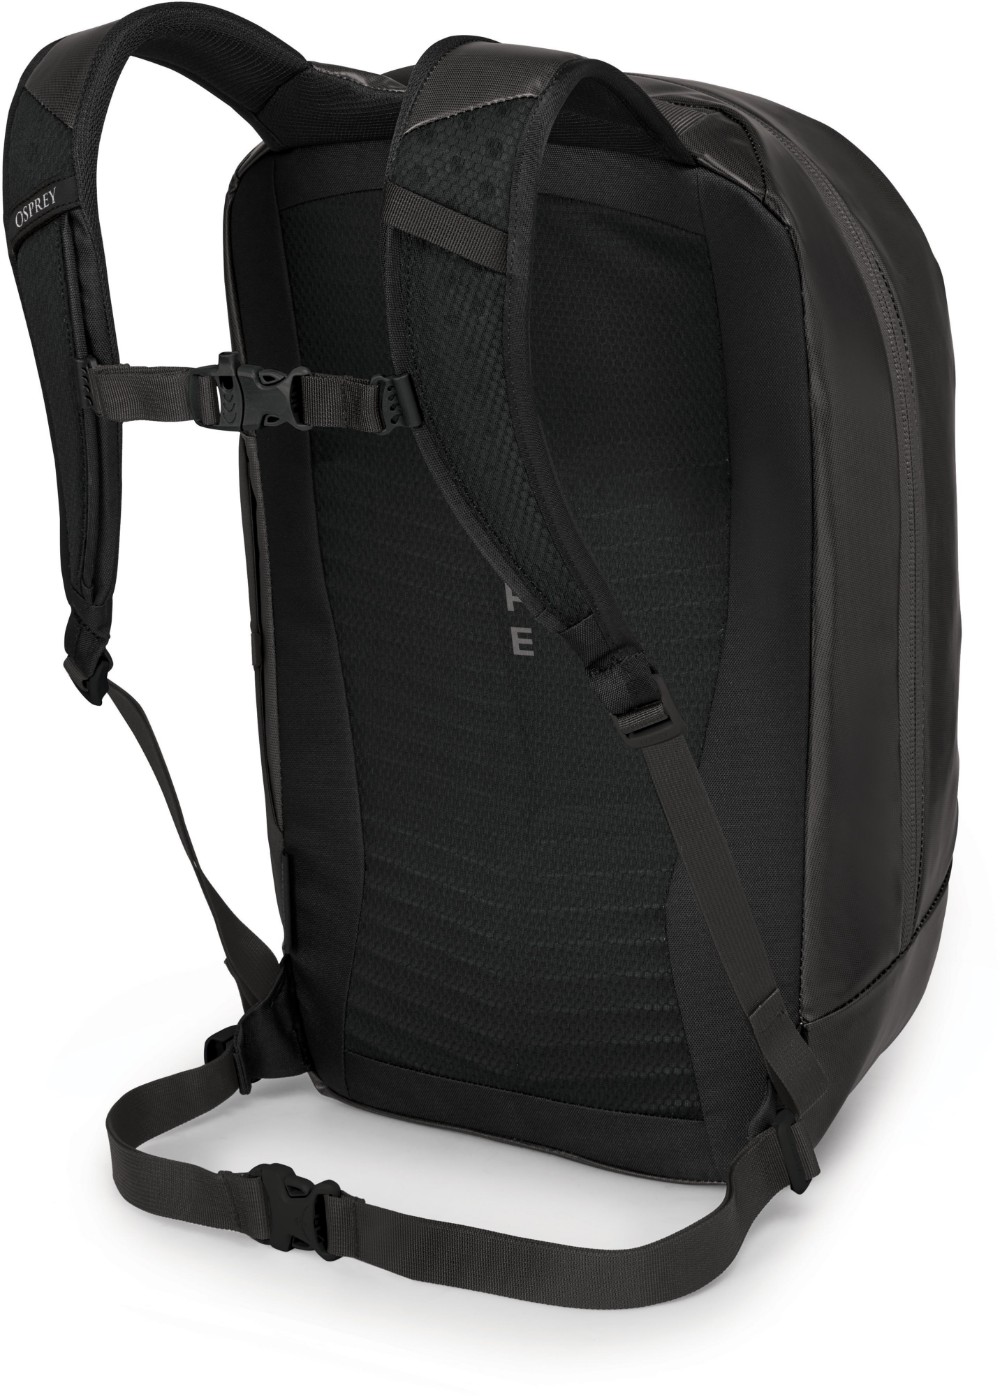 Transporter Panel Loader Backpack image 2